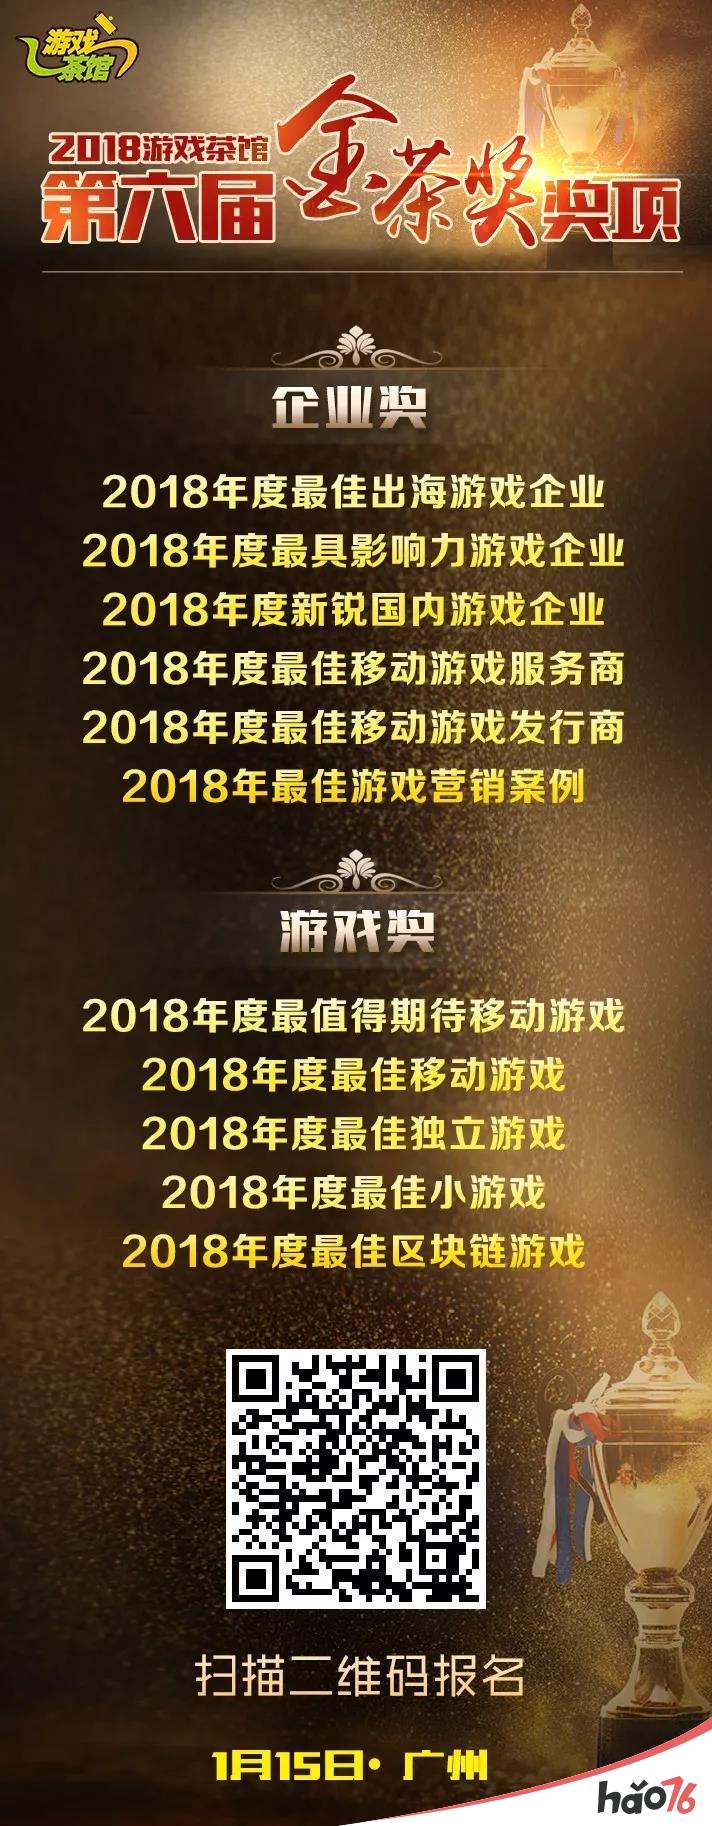 官宣!第六届CEO年会暨金茶奖颁奖盛典 定档2019年1月15日(广州)